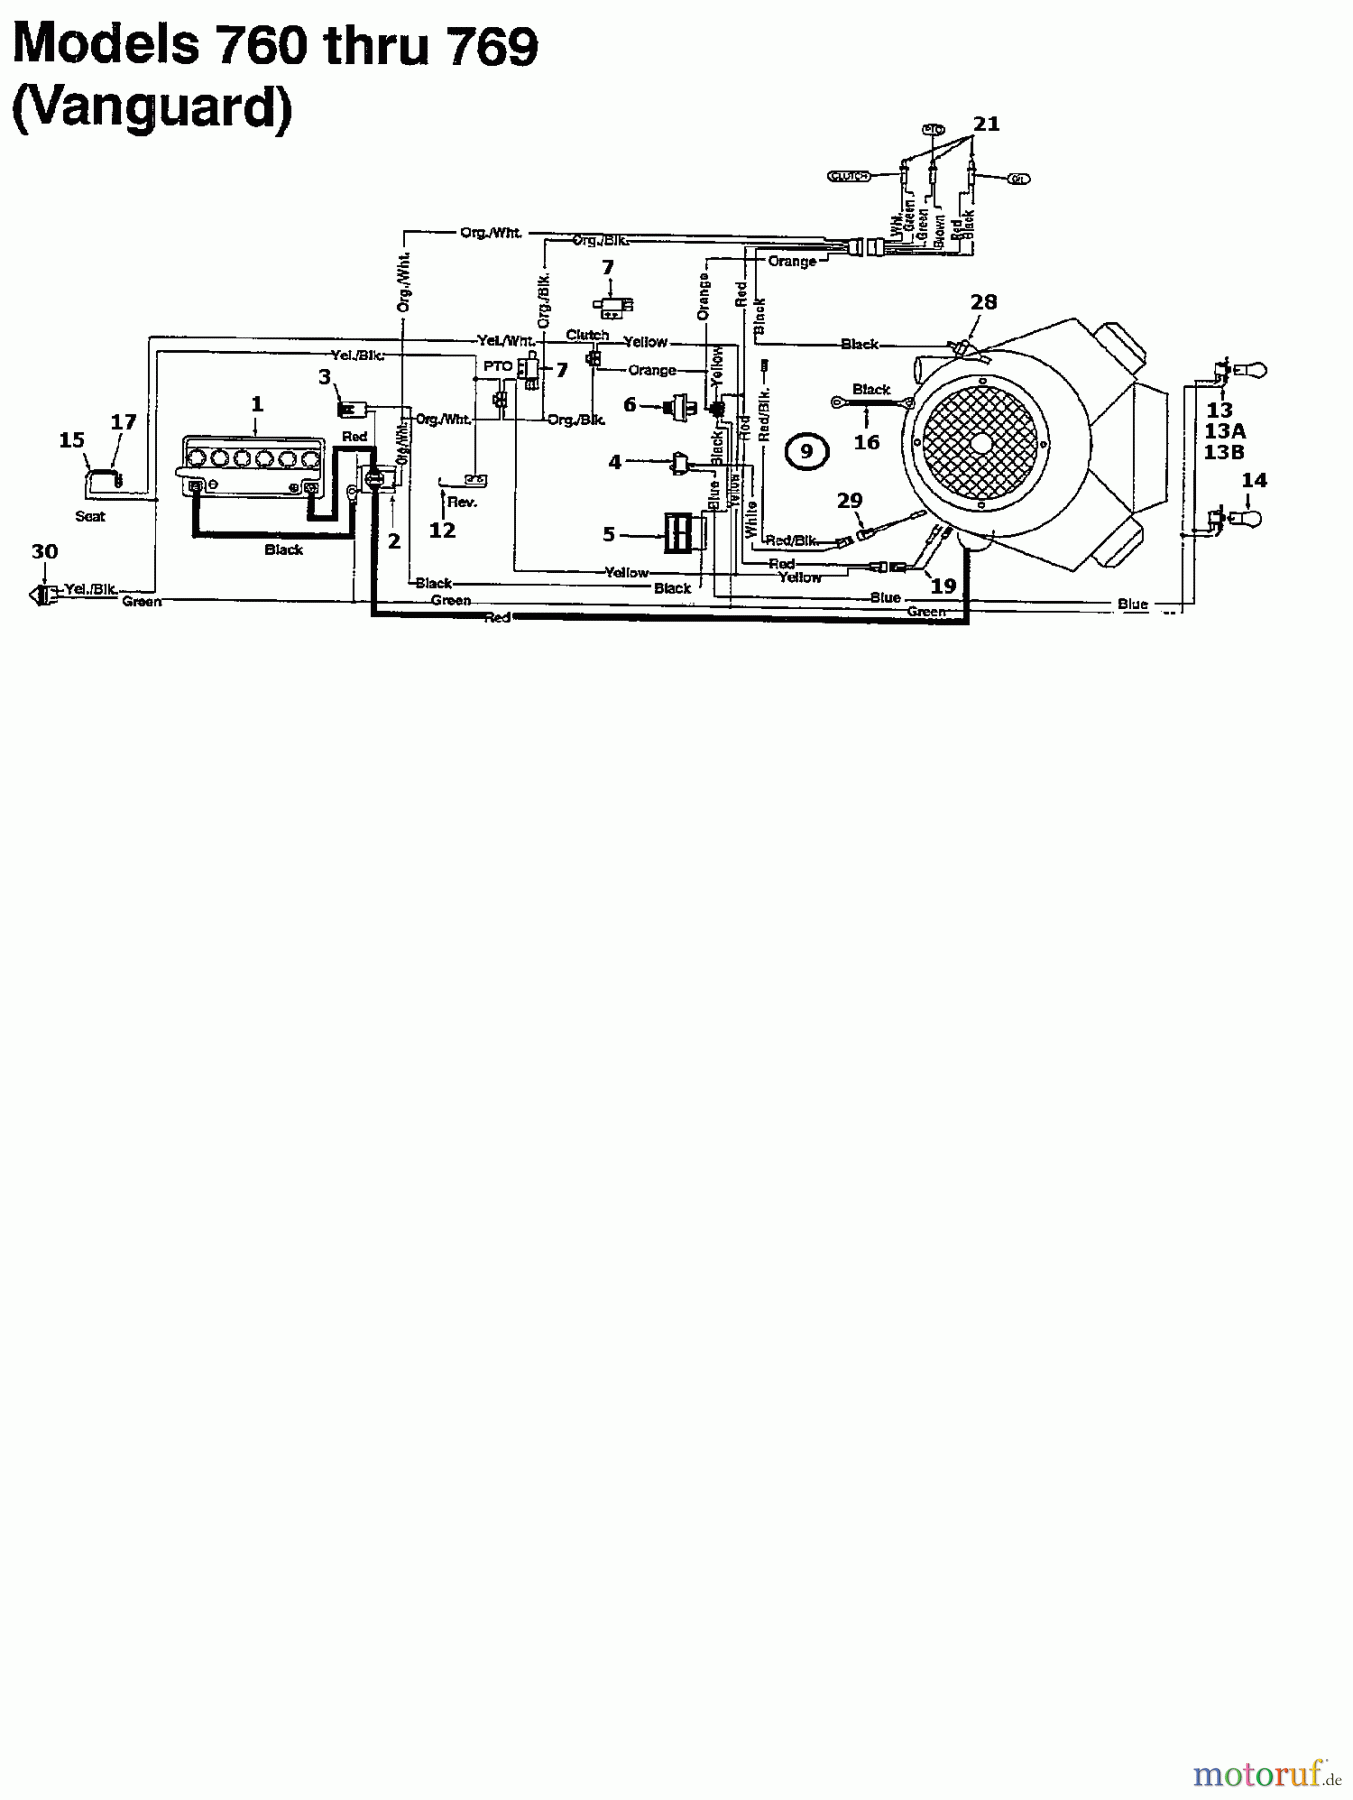  MTD Lawn tractors 13/102 135N765N678  (1995) Wiring diagram Vanguard